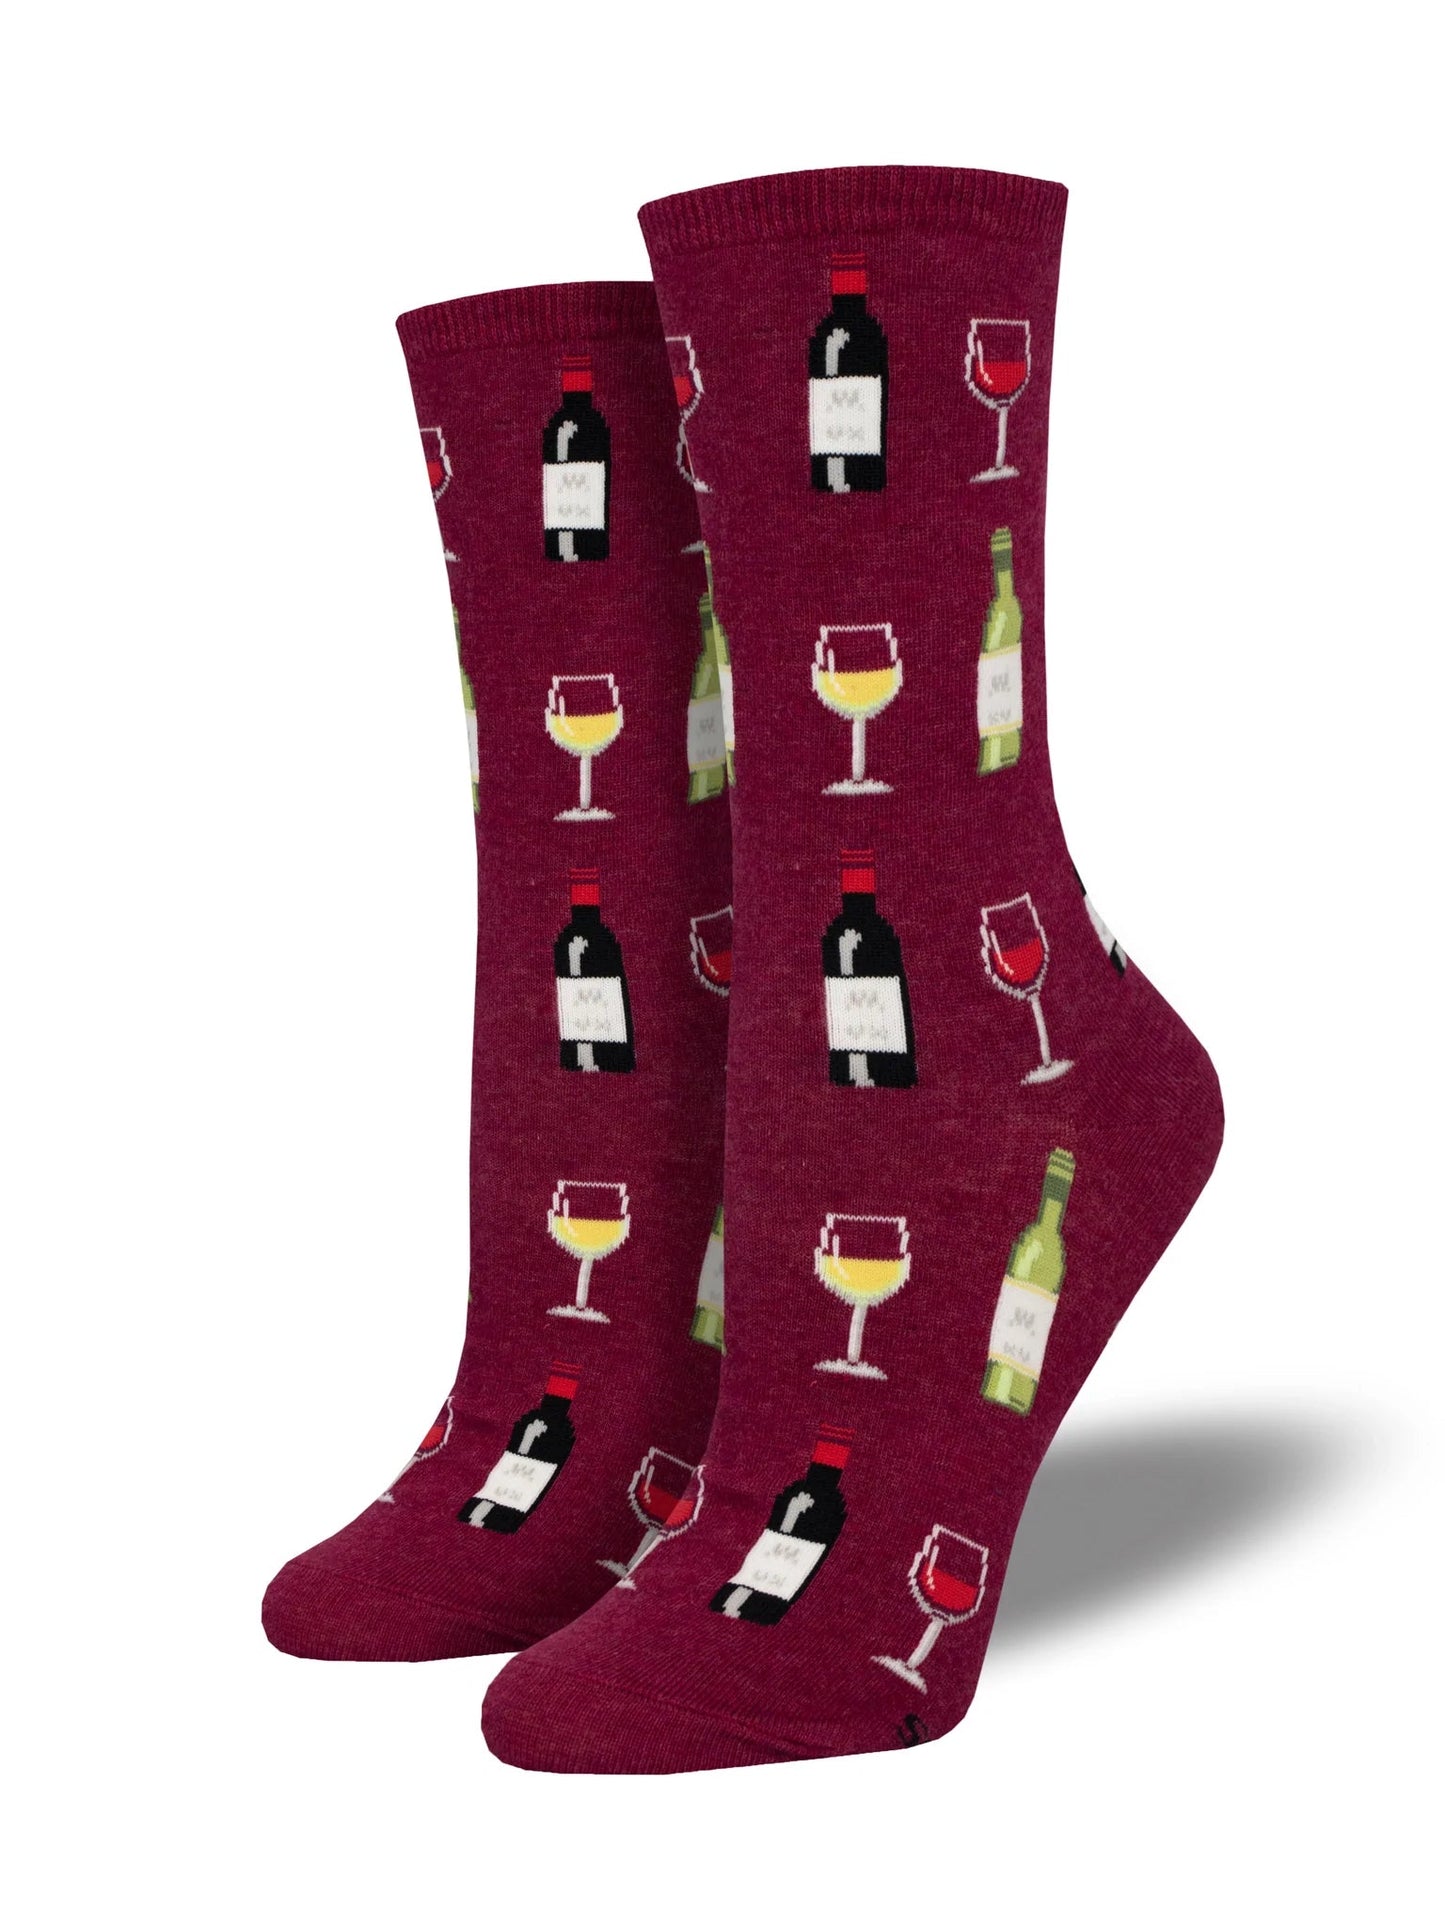 Fine Wine | Red Heather - Socks - Socksmith